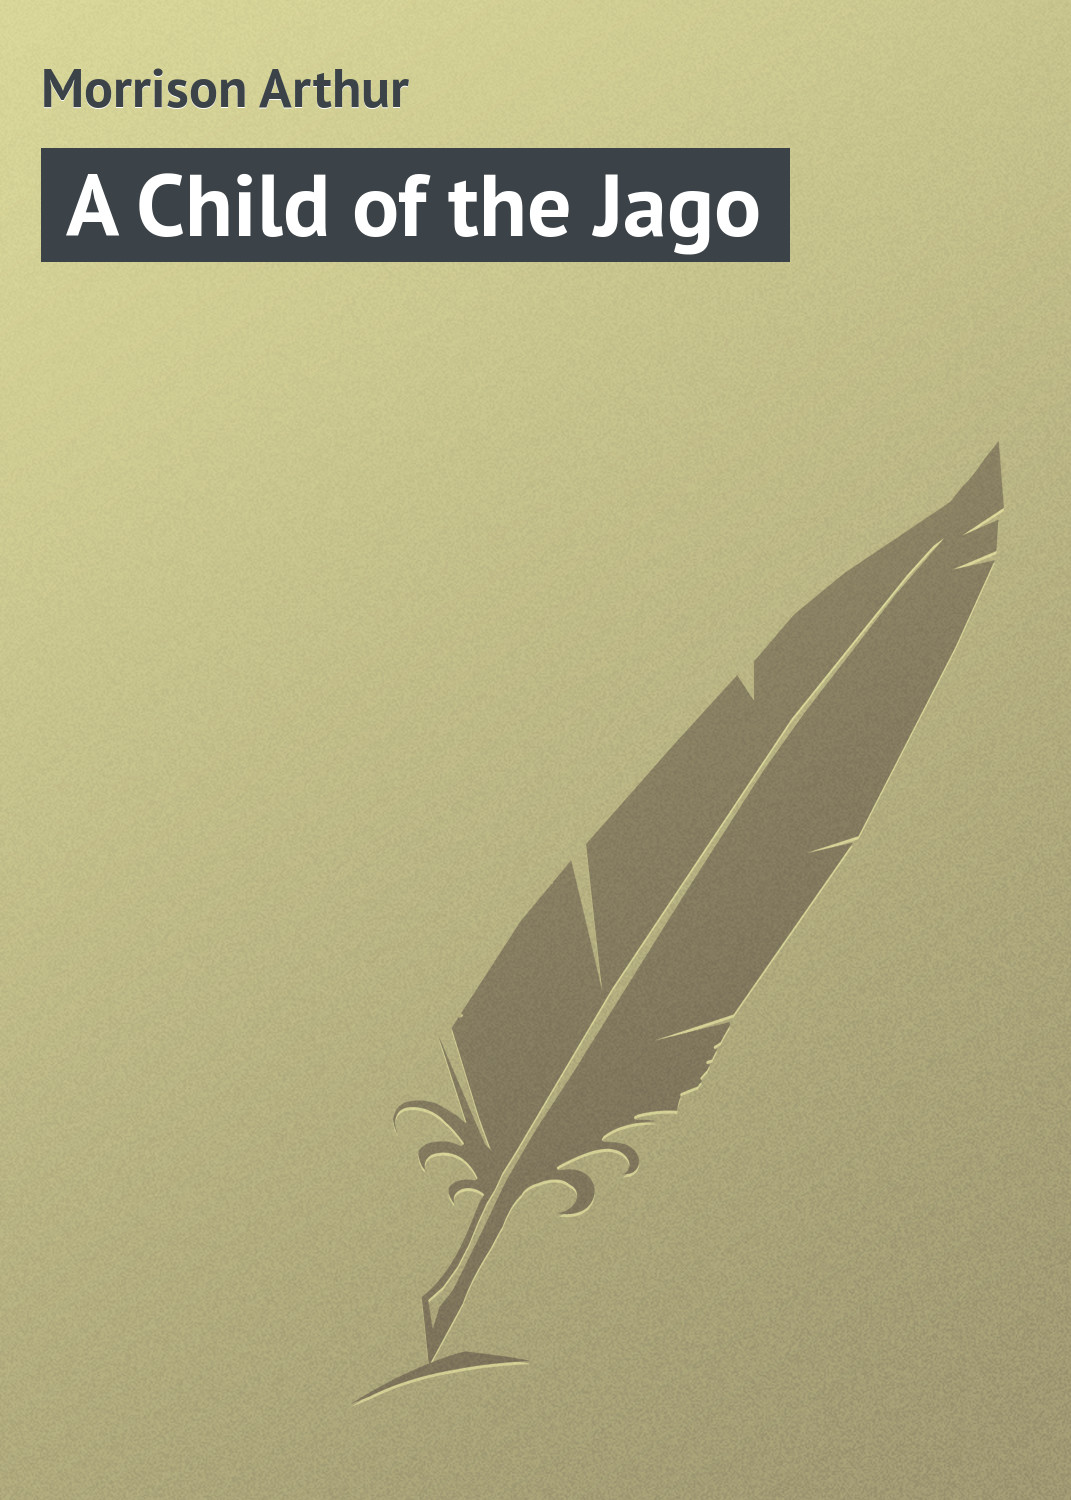 Книга A Child of the Jago из серии , созданная Arthur Morrison, может относится к жанру Зарубежная классика. Стоимость электронной книги A Child of the Jago с идентификатором 23164147 составляет 5.99 руб.